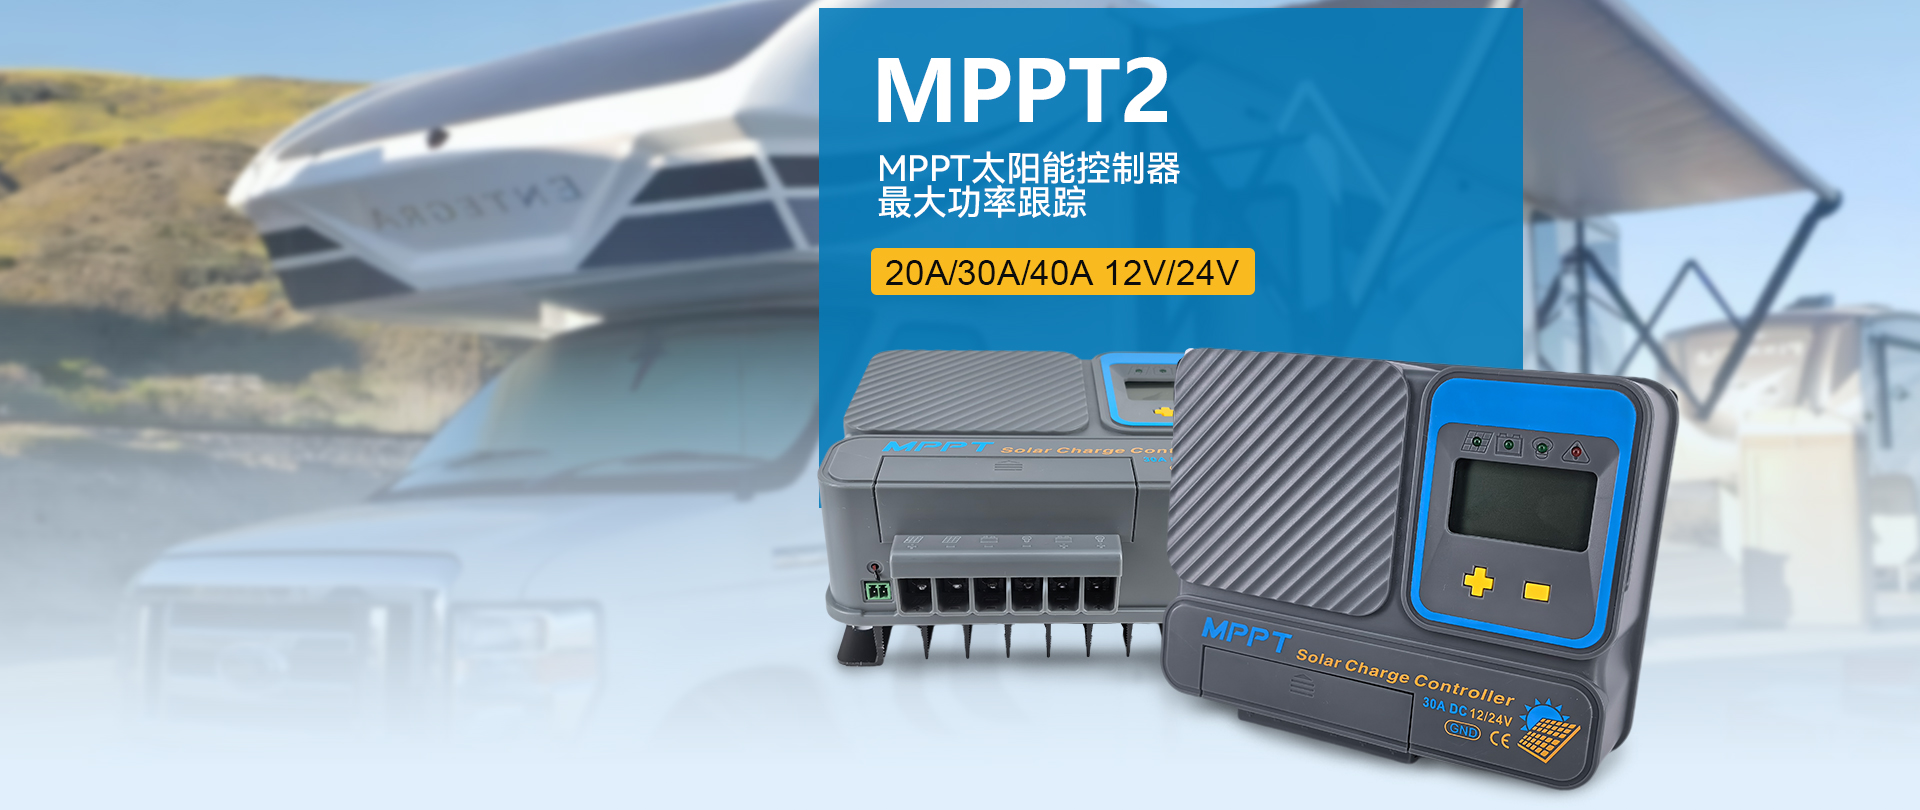 新款MPPT控制器MPPT2系